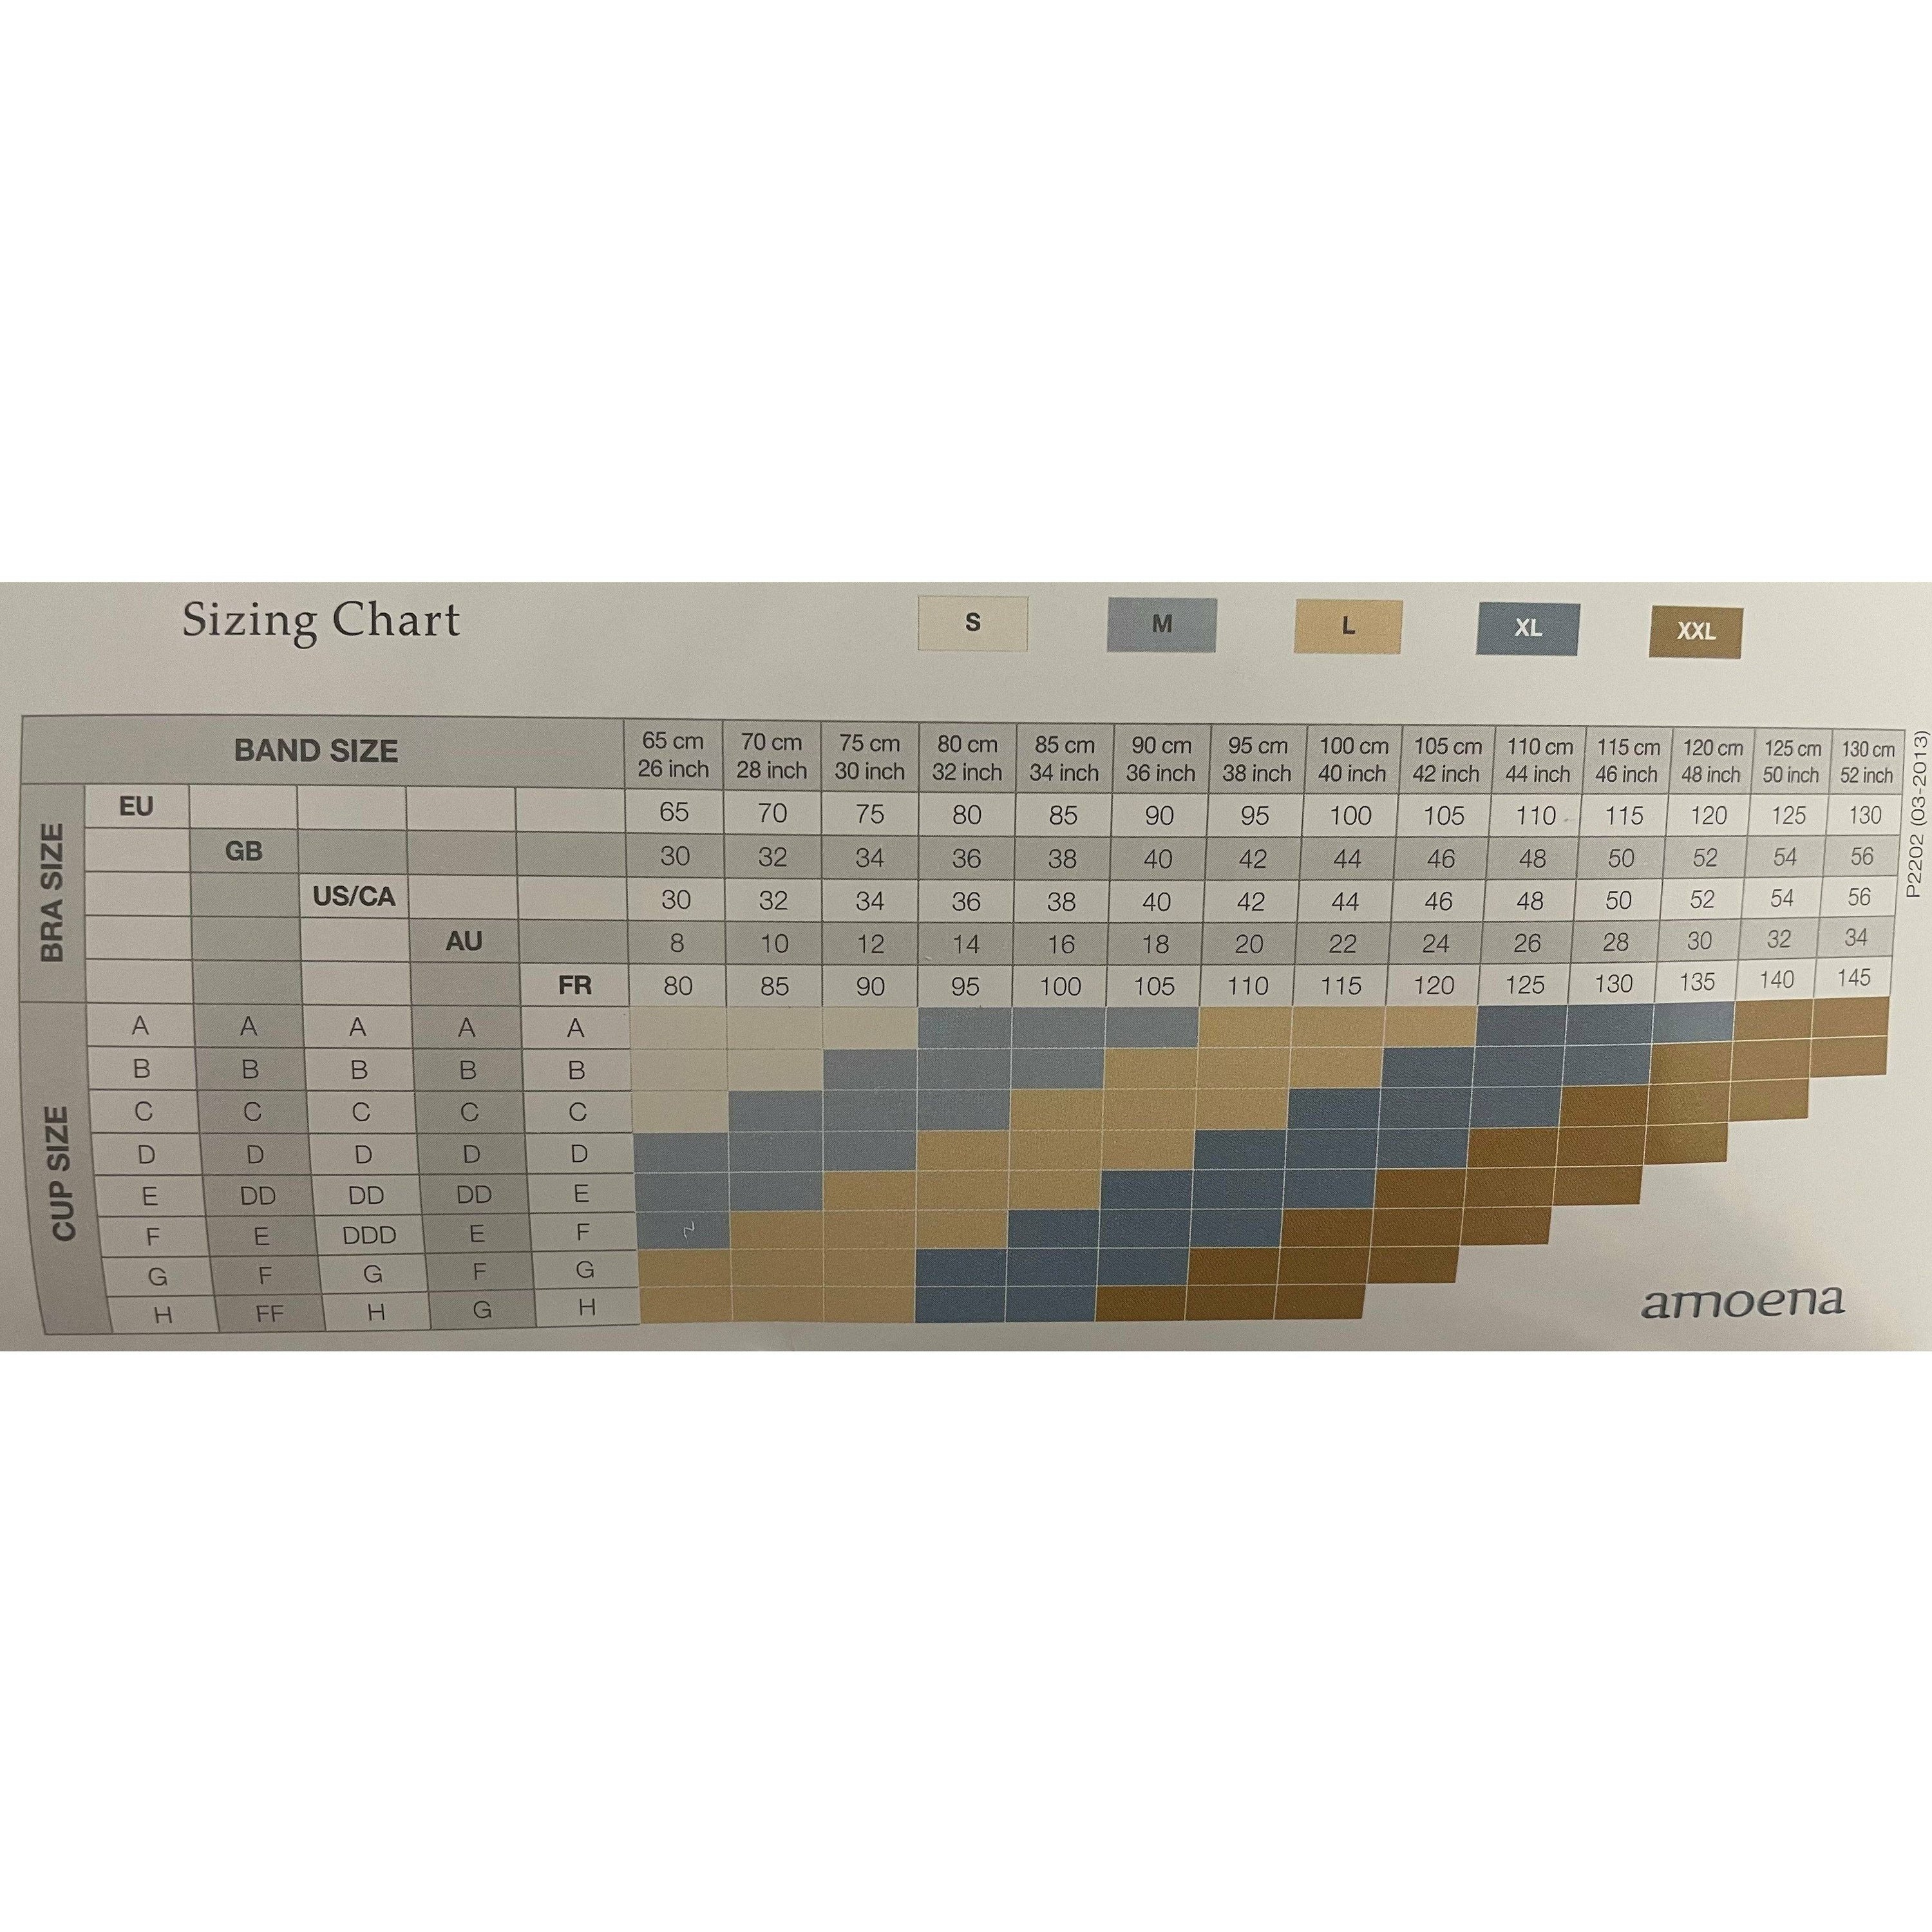 Theraport Post Surgery Bra Chart